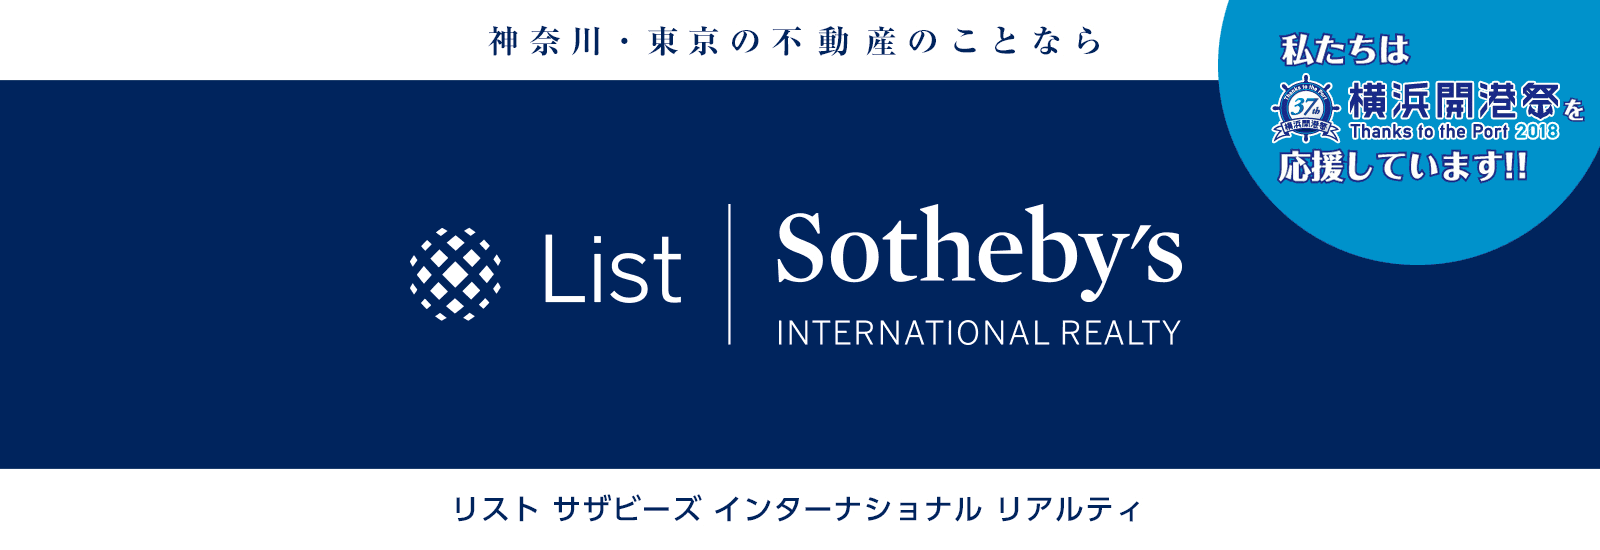 株式会社リストは横浜開港祭を応援しています